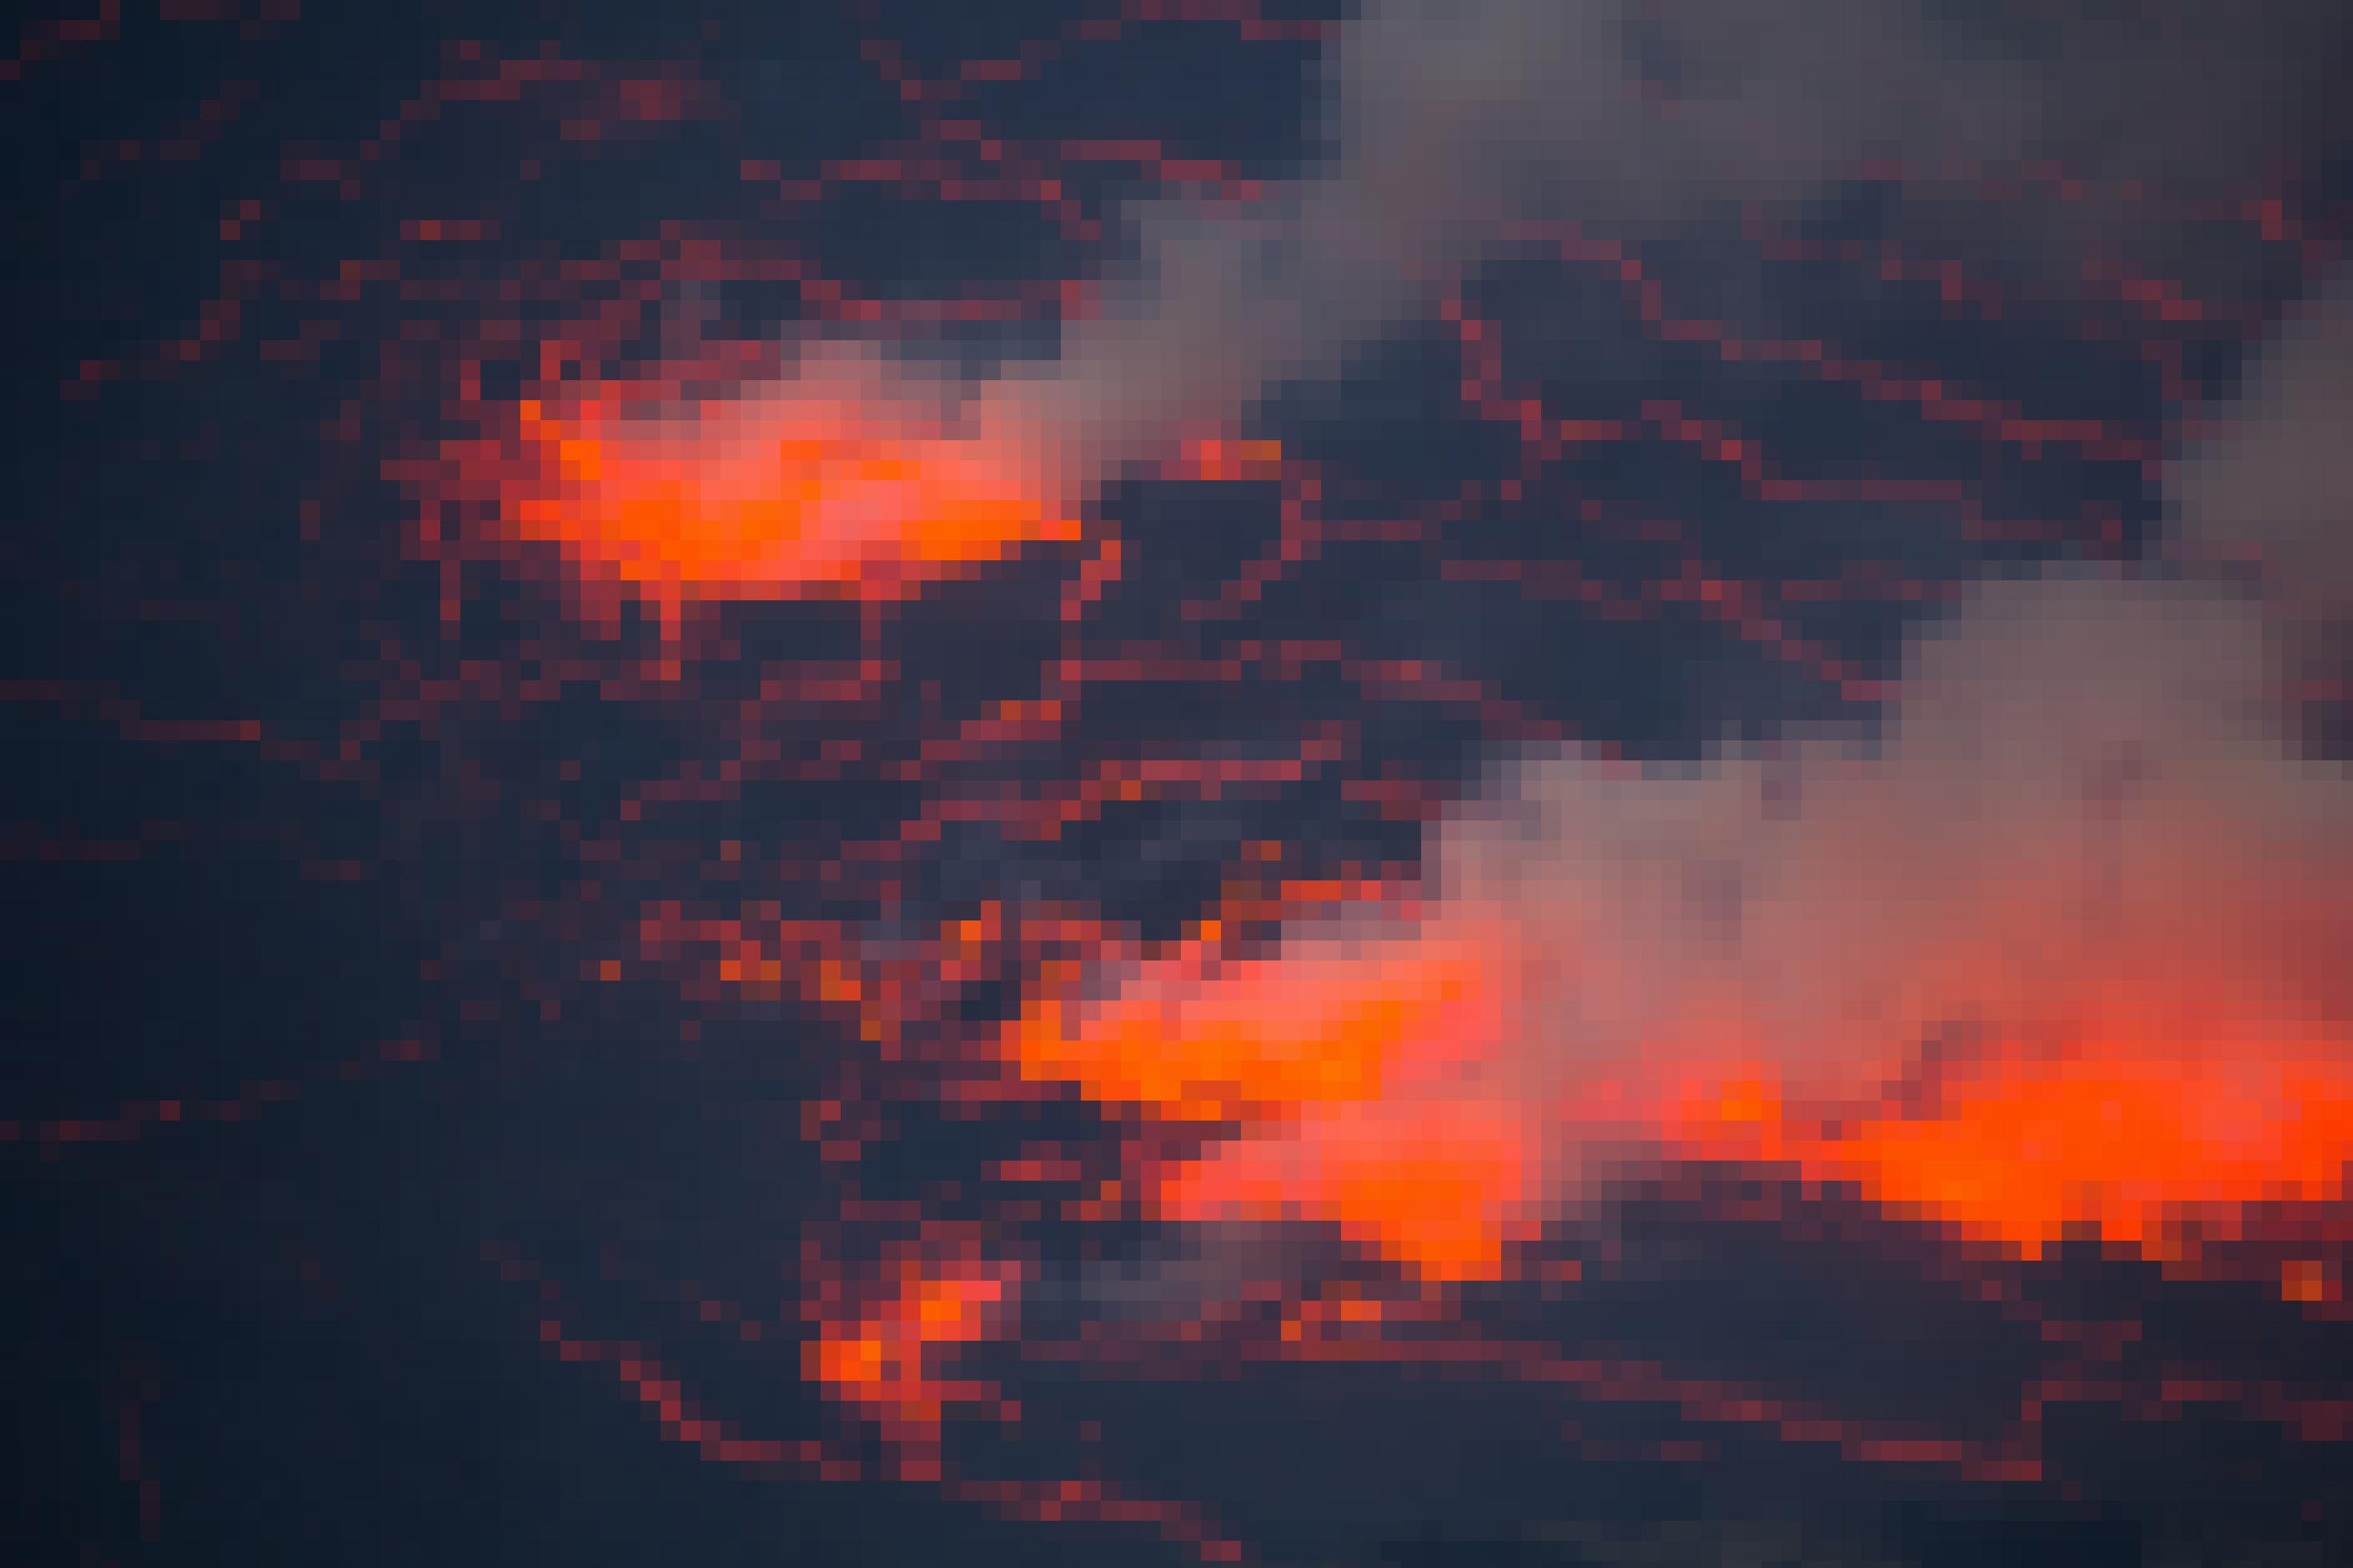 Wie rote Adern scheint das heißt Magma durch die erkaltete Lava im Krater des Nyiragongo, In der Nacht scheint der Himmel im und über dem Krater rötlich.